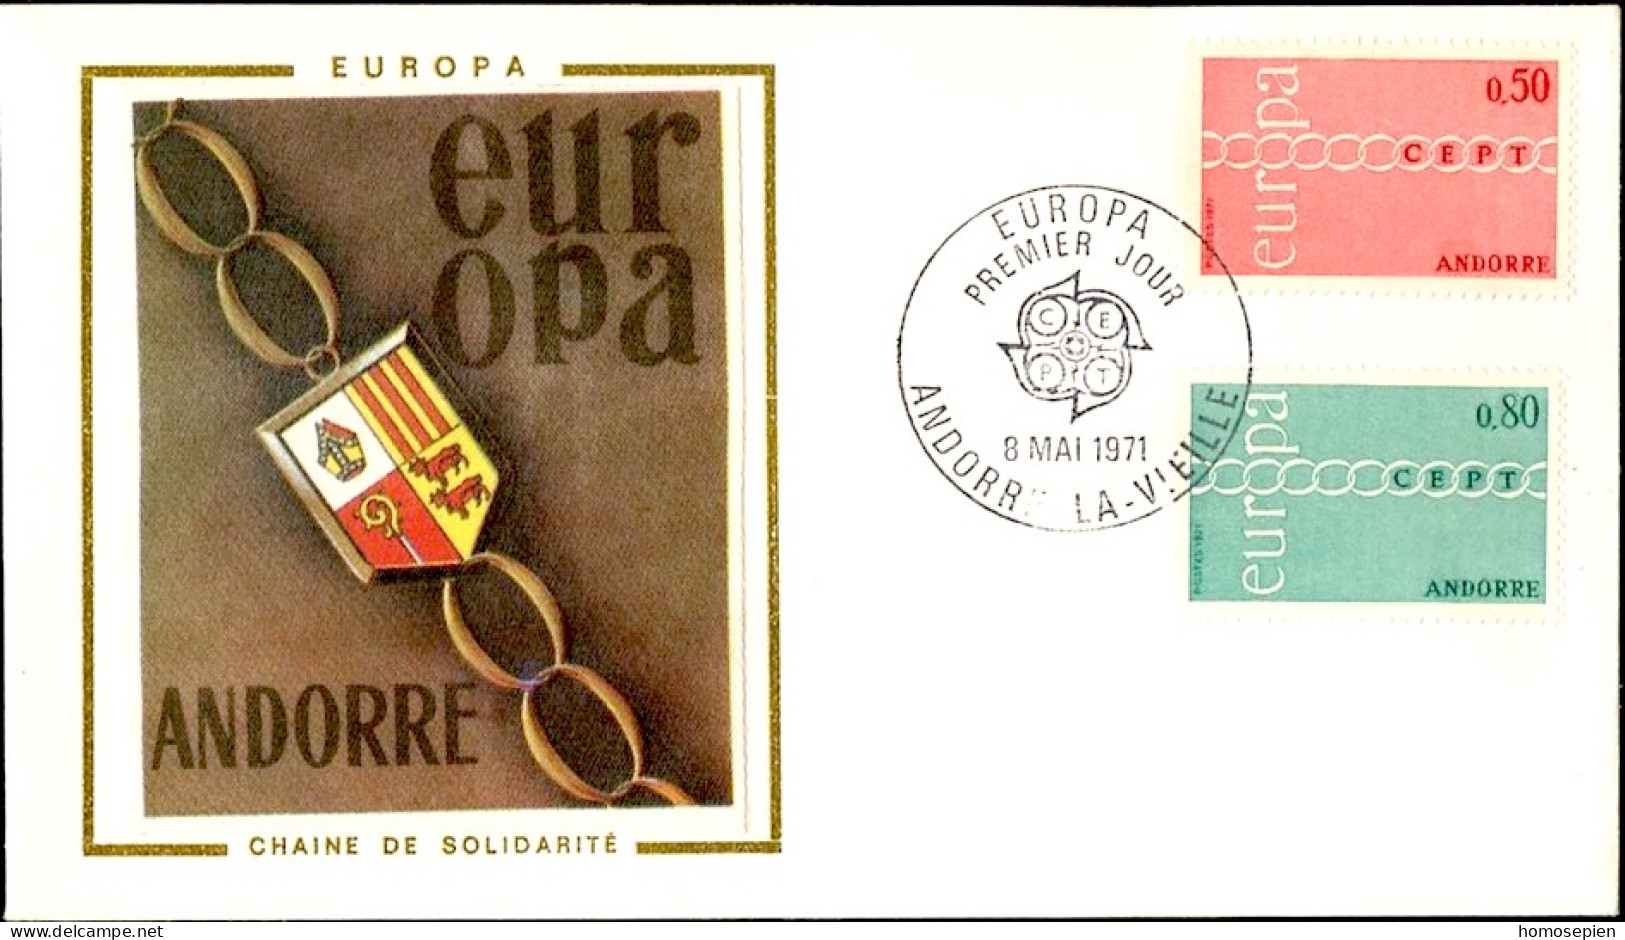 Europa CEPT 1971 Andorre Français - Andorra FDC6 Y&T N°212 à 213 - Michel N°232 à 233 - 1971